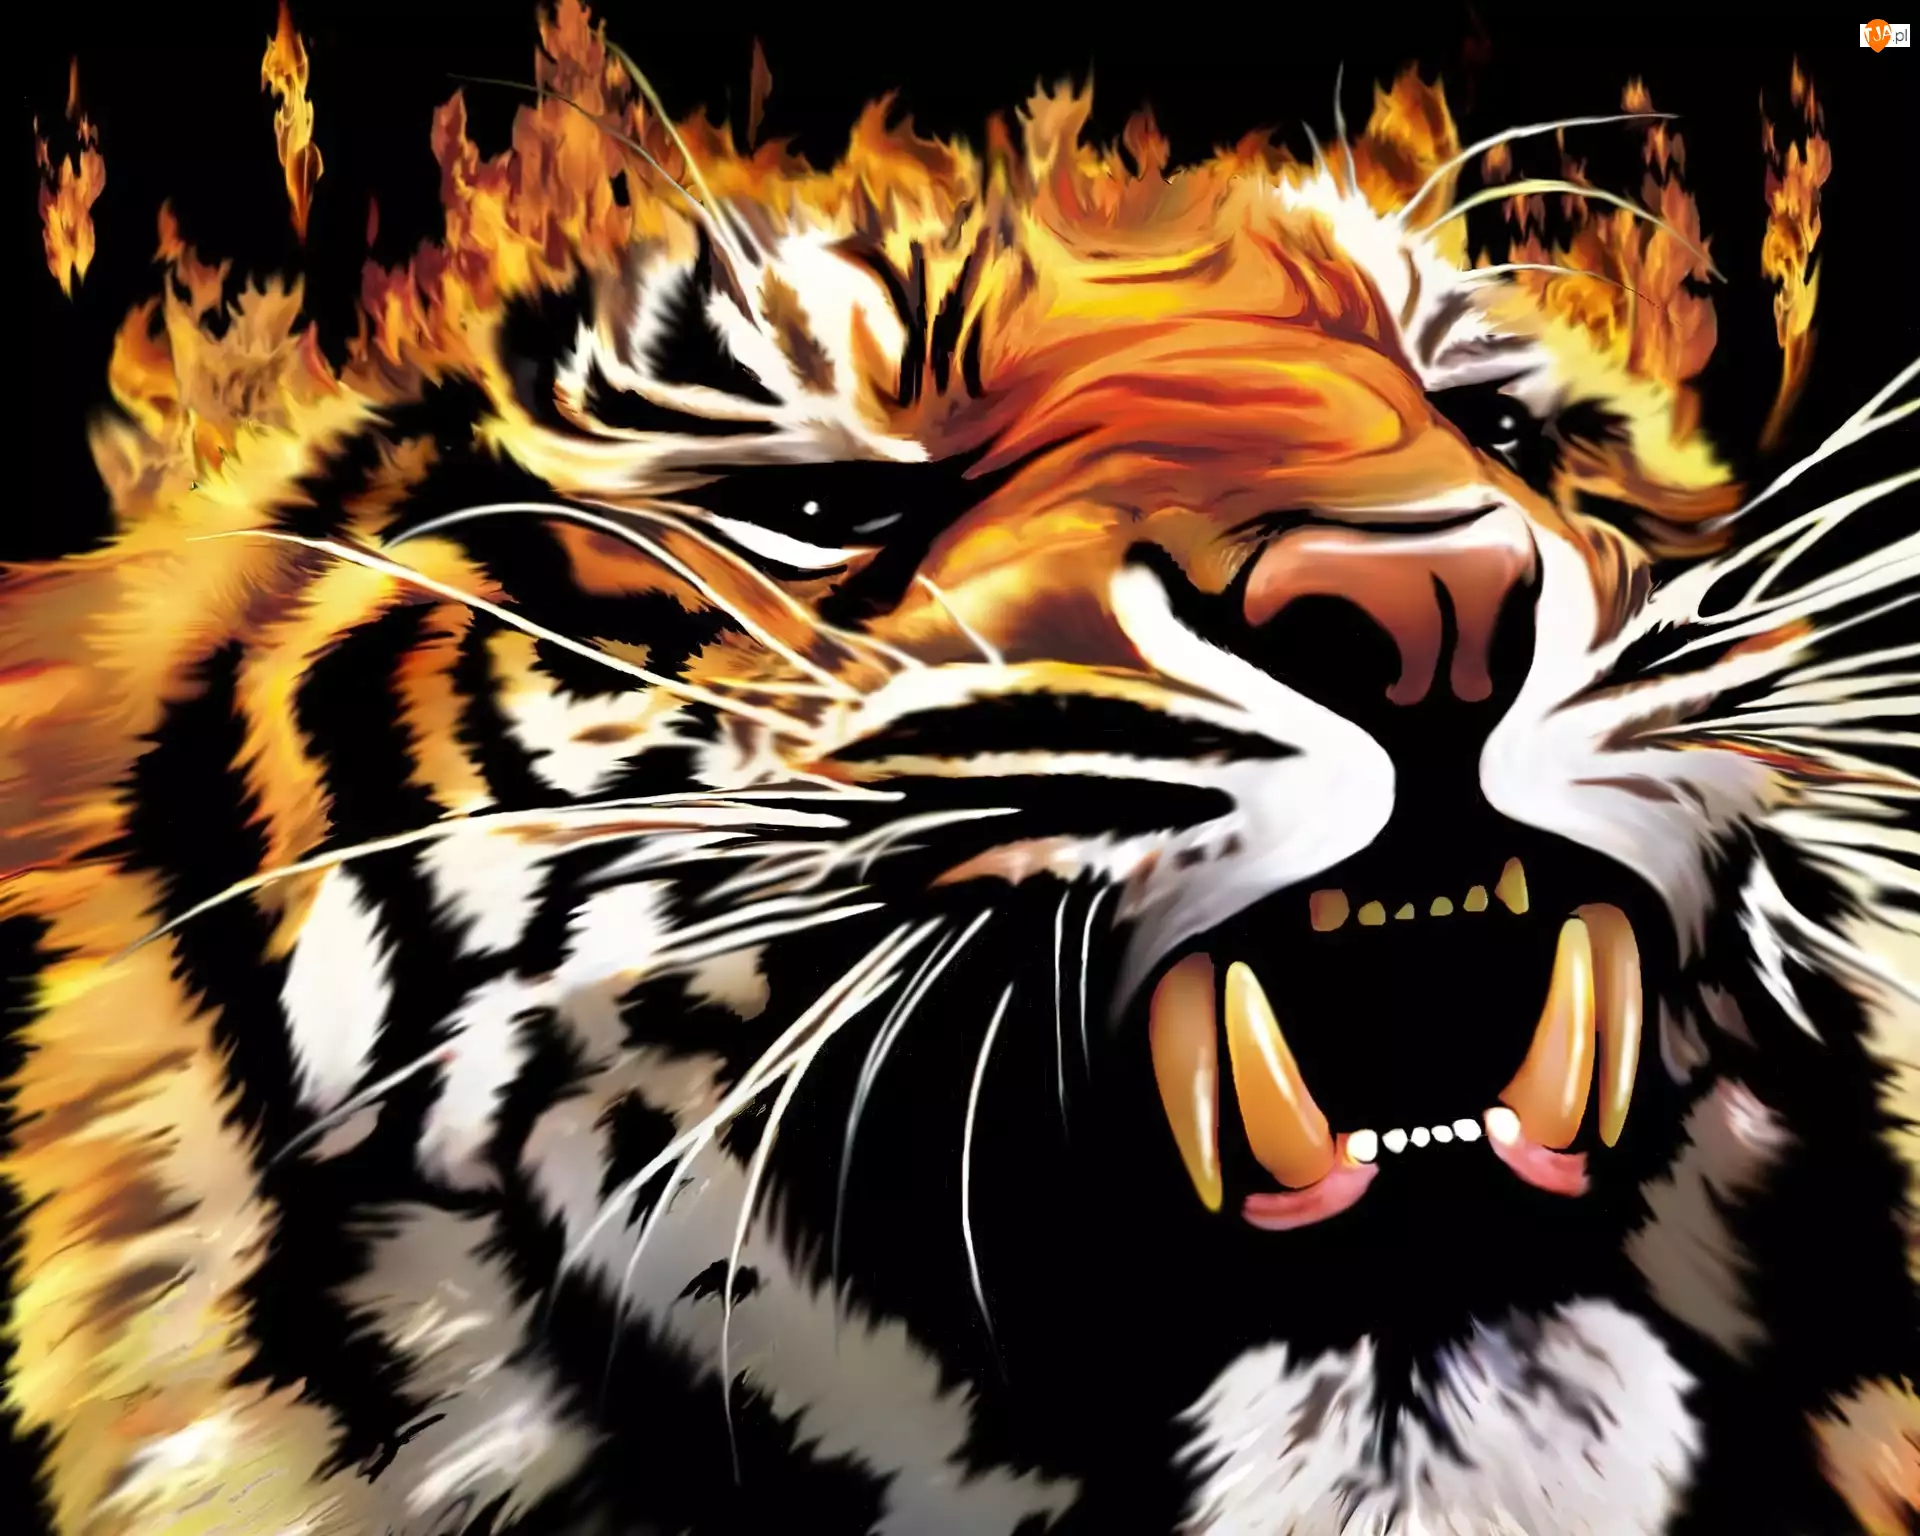 Ogień, Tygrys